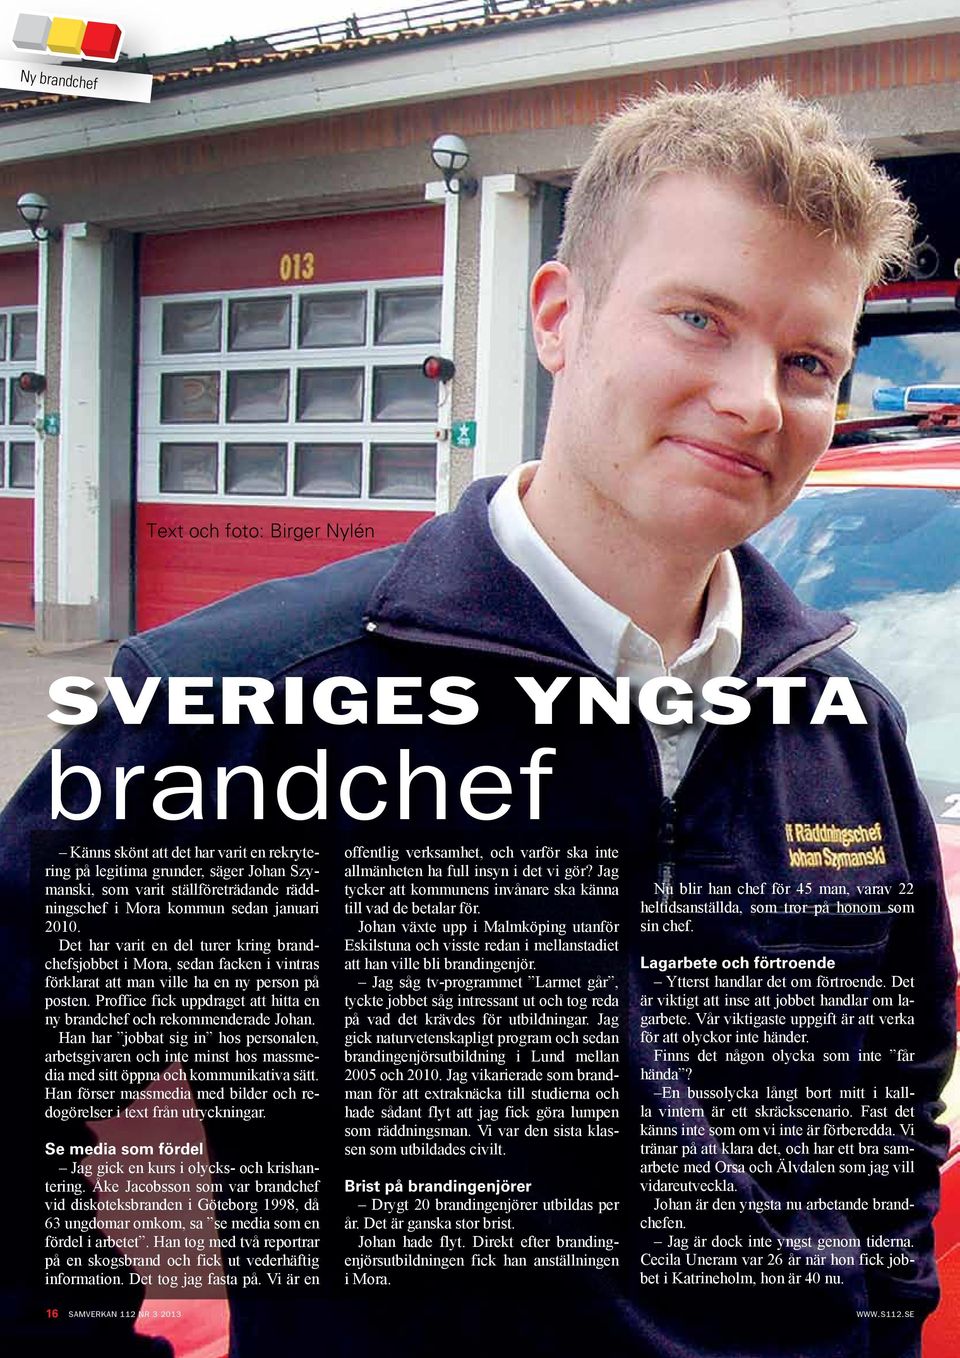 Proffice fick uppdraget att hitta en ny brandchef och rekommenderade Johan. Han har jobbat sig in hos personalen, arbetsgivaren och inte minst hos massmedia med sitt öppna och kommunikativa sätt.